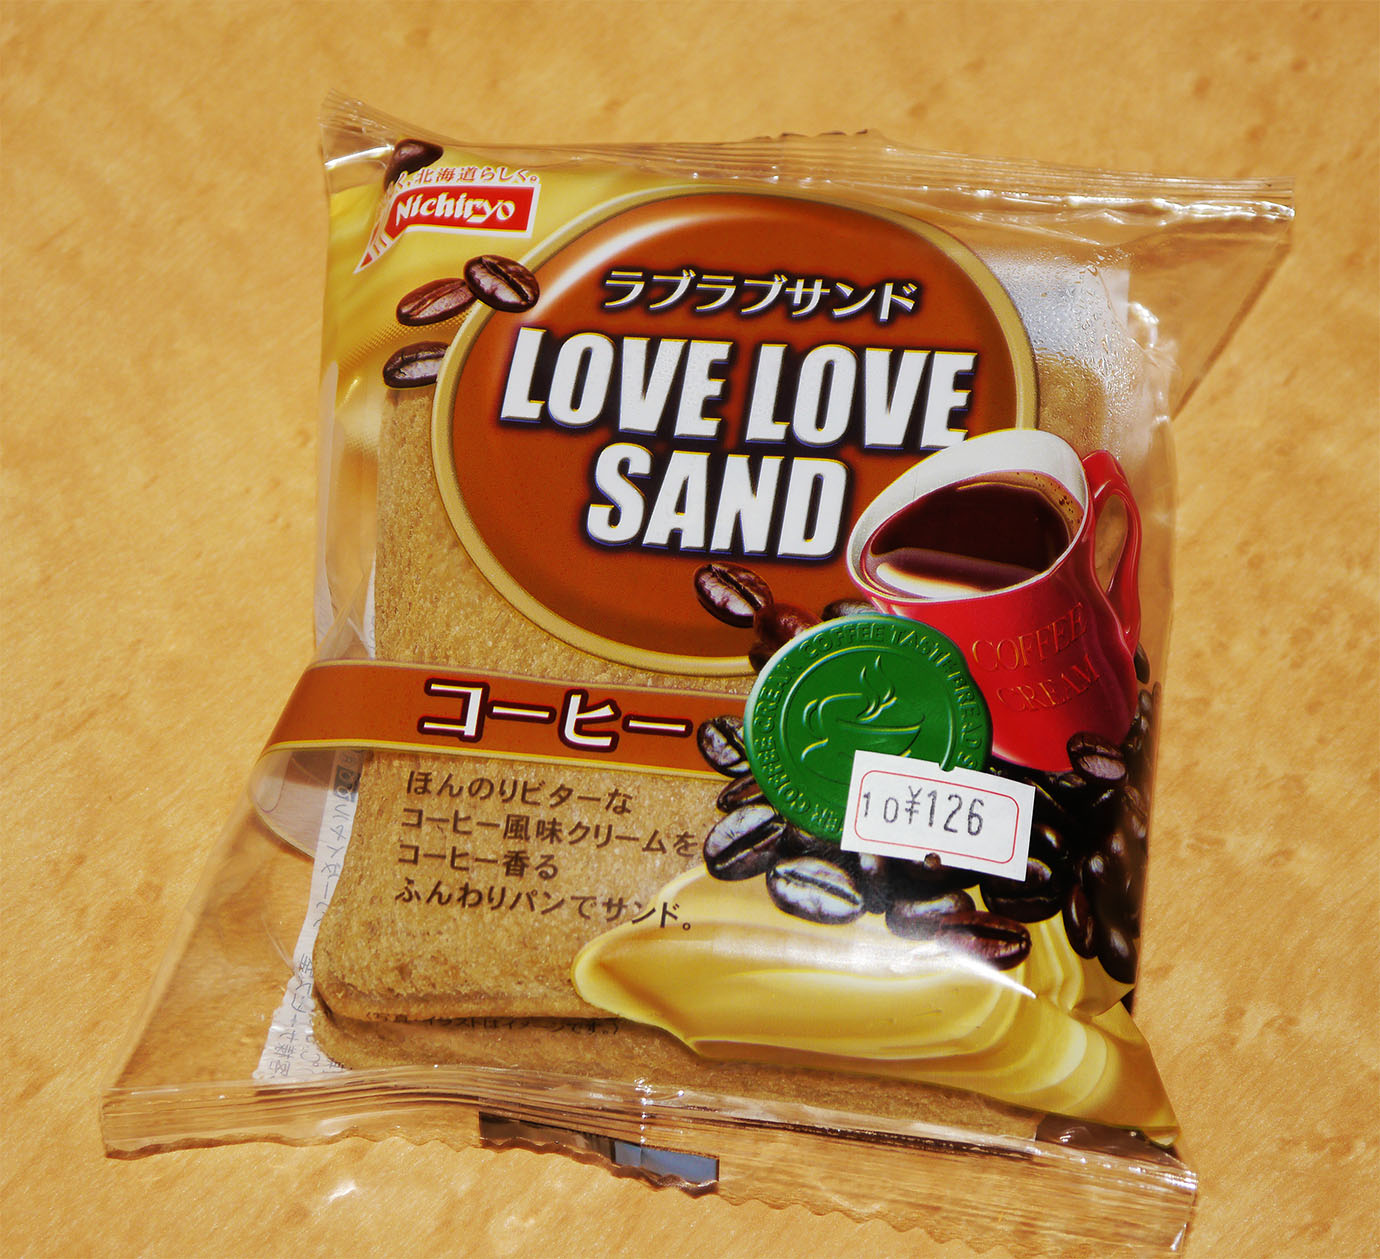 【パン】北海道民はラブラブサンドが大好き！ ランチパックのライバル「ラブラブサンド」とは何なのか？